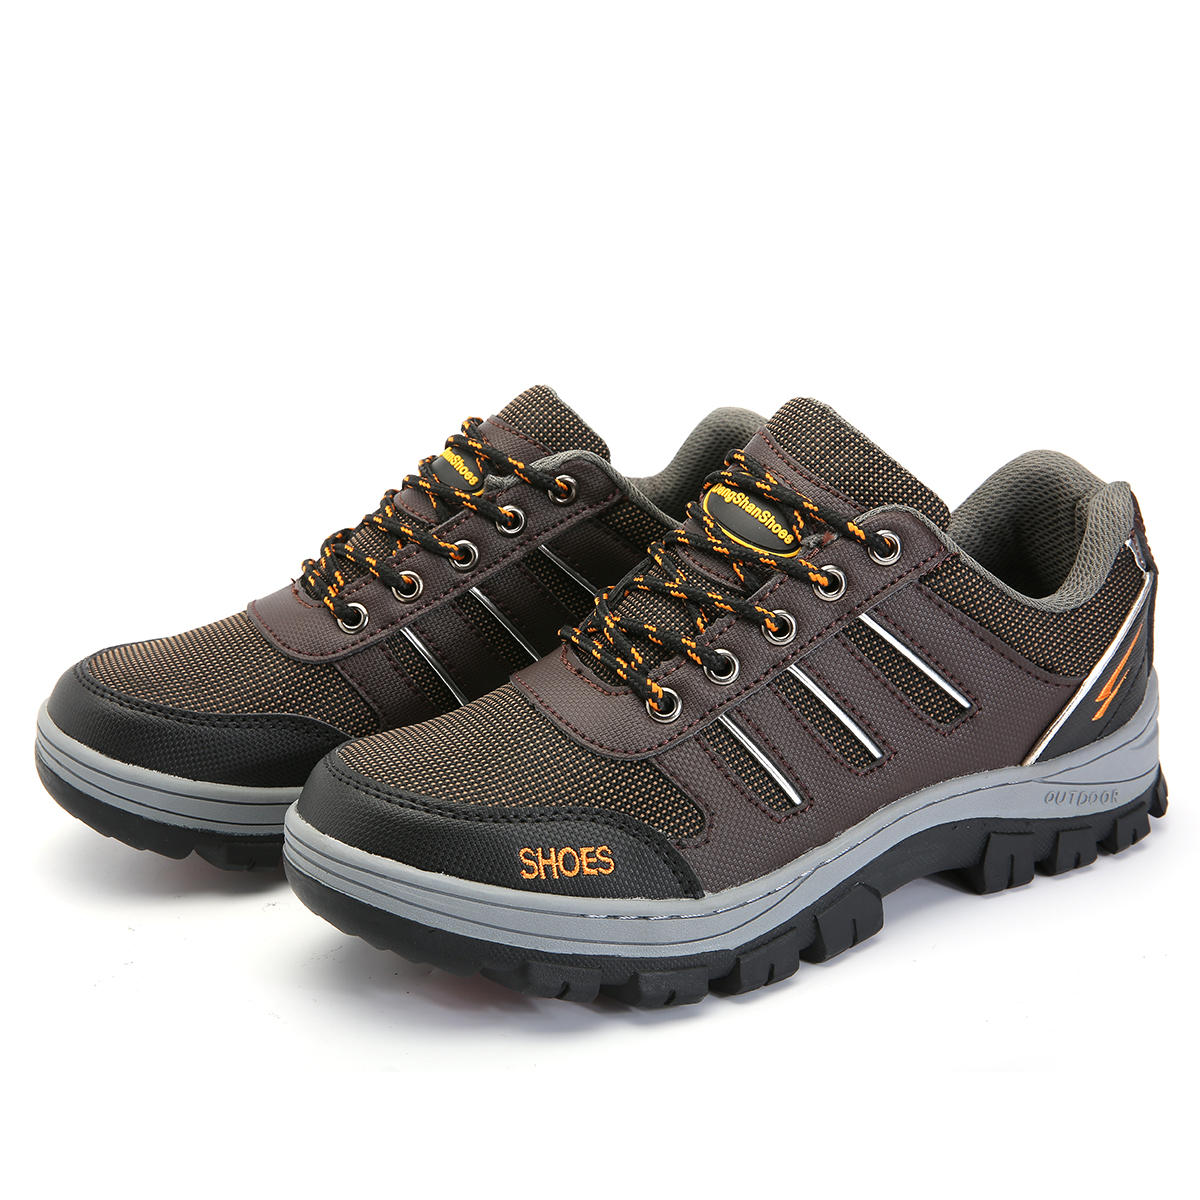 Zapatos de seguridad para hombre Tengoo con puntera de acero, zapatillas para correr y senderismo antideslizantes e impermeables